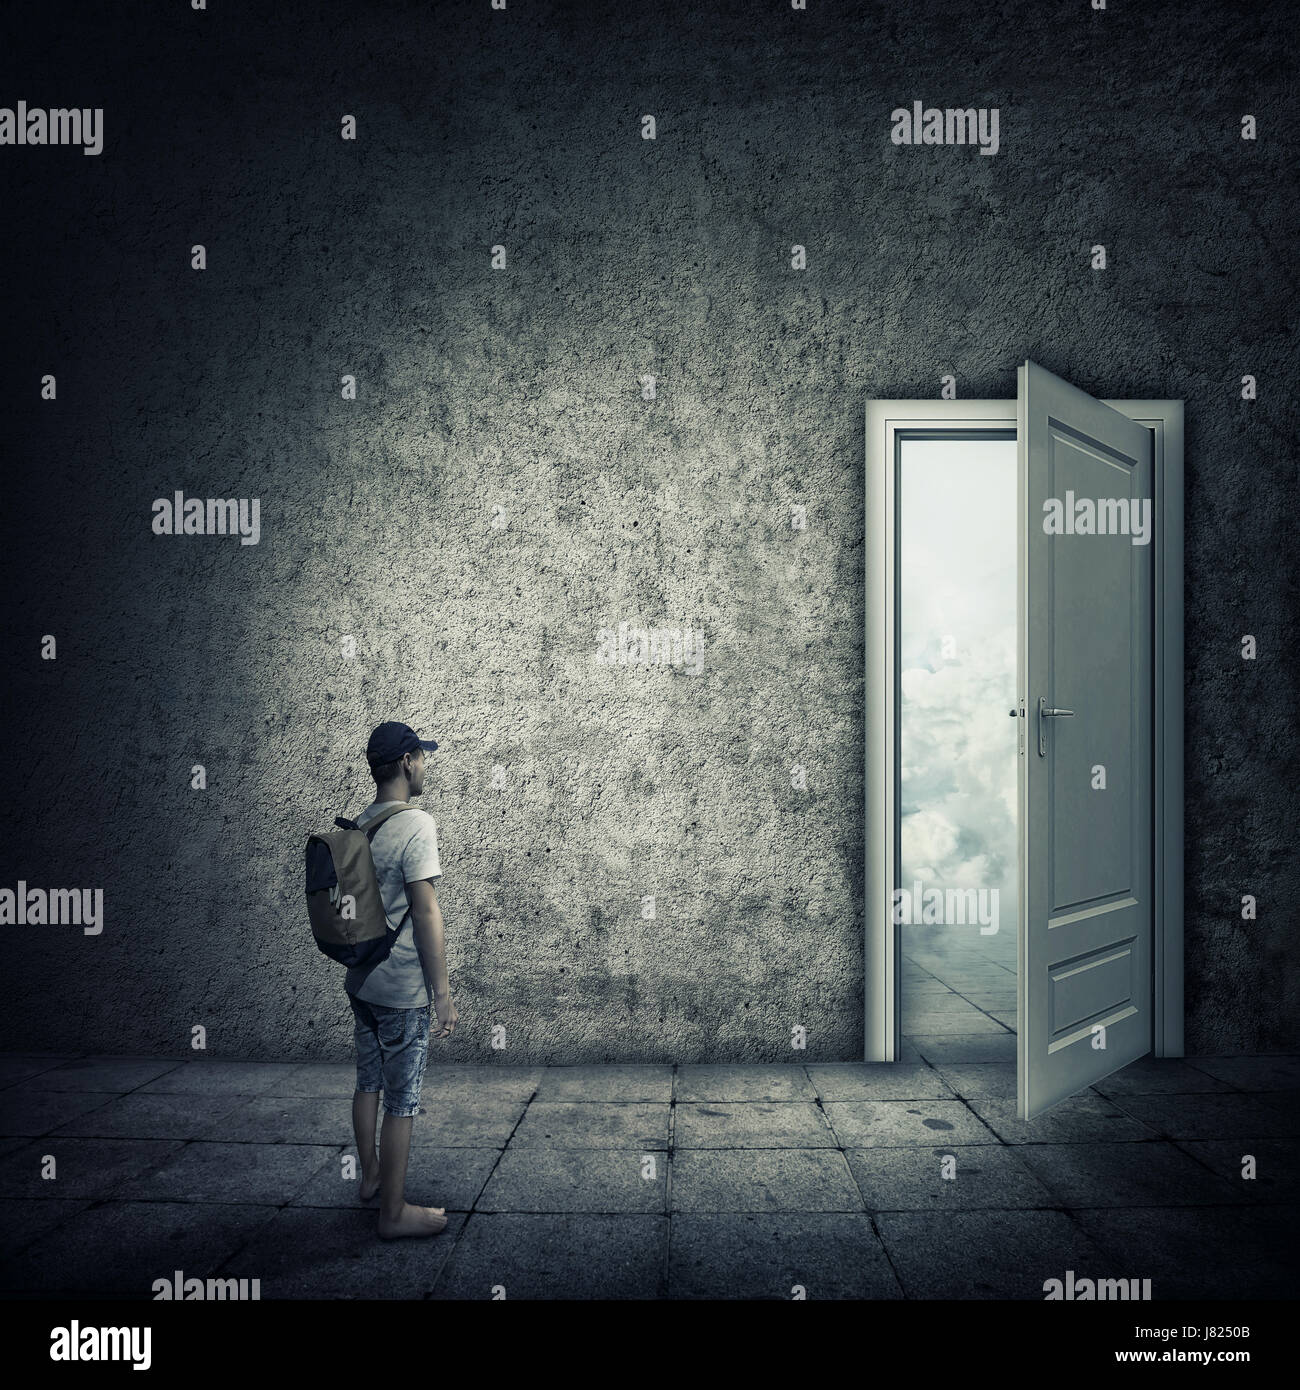 Abstrakte Idee mit einer Person in einem dunklen Raum vor einer geöffneten Tür stehen. Möglichkeit, Eingang in eine andere Welt zu entkommen. Stockfoto